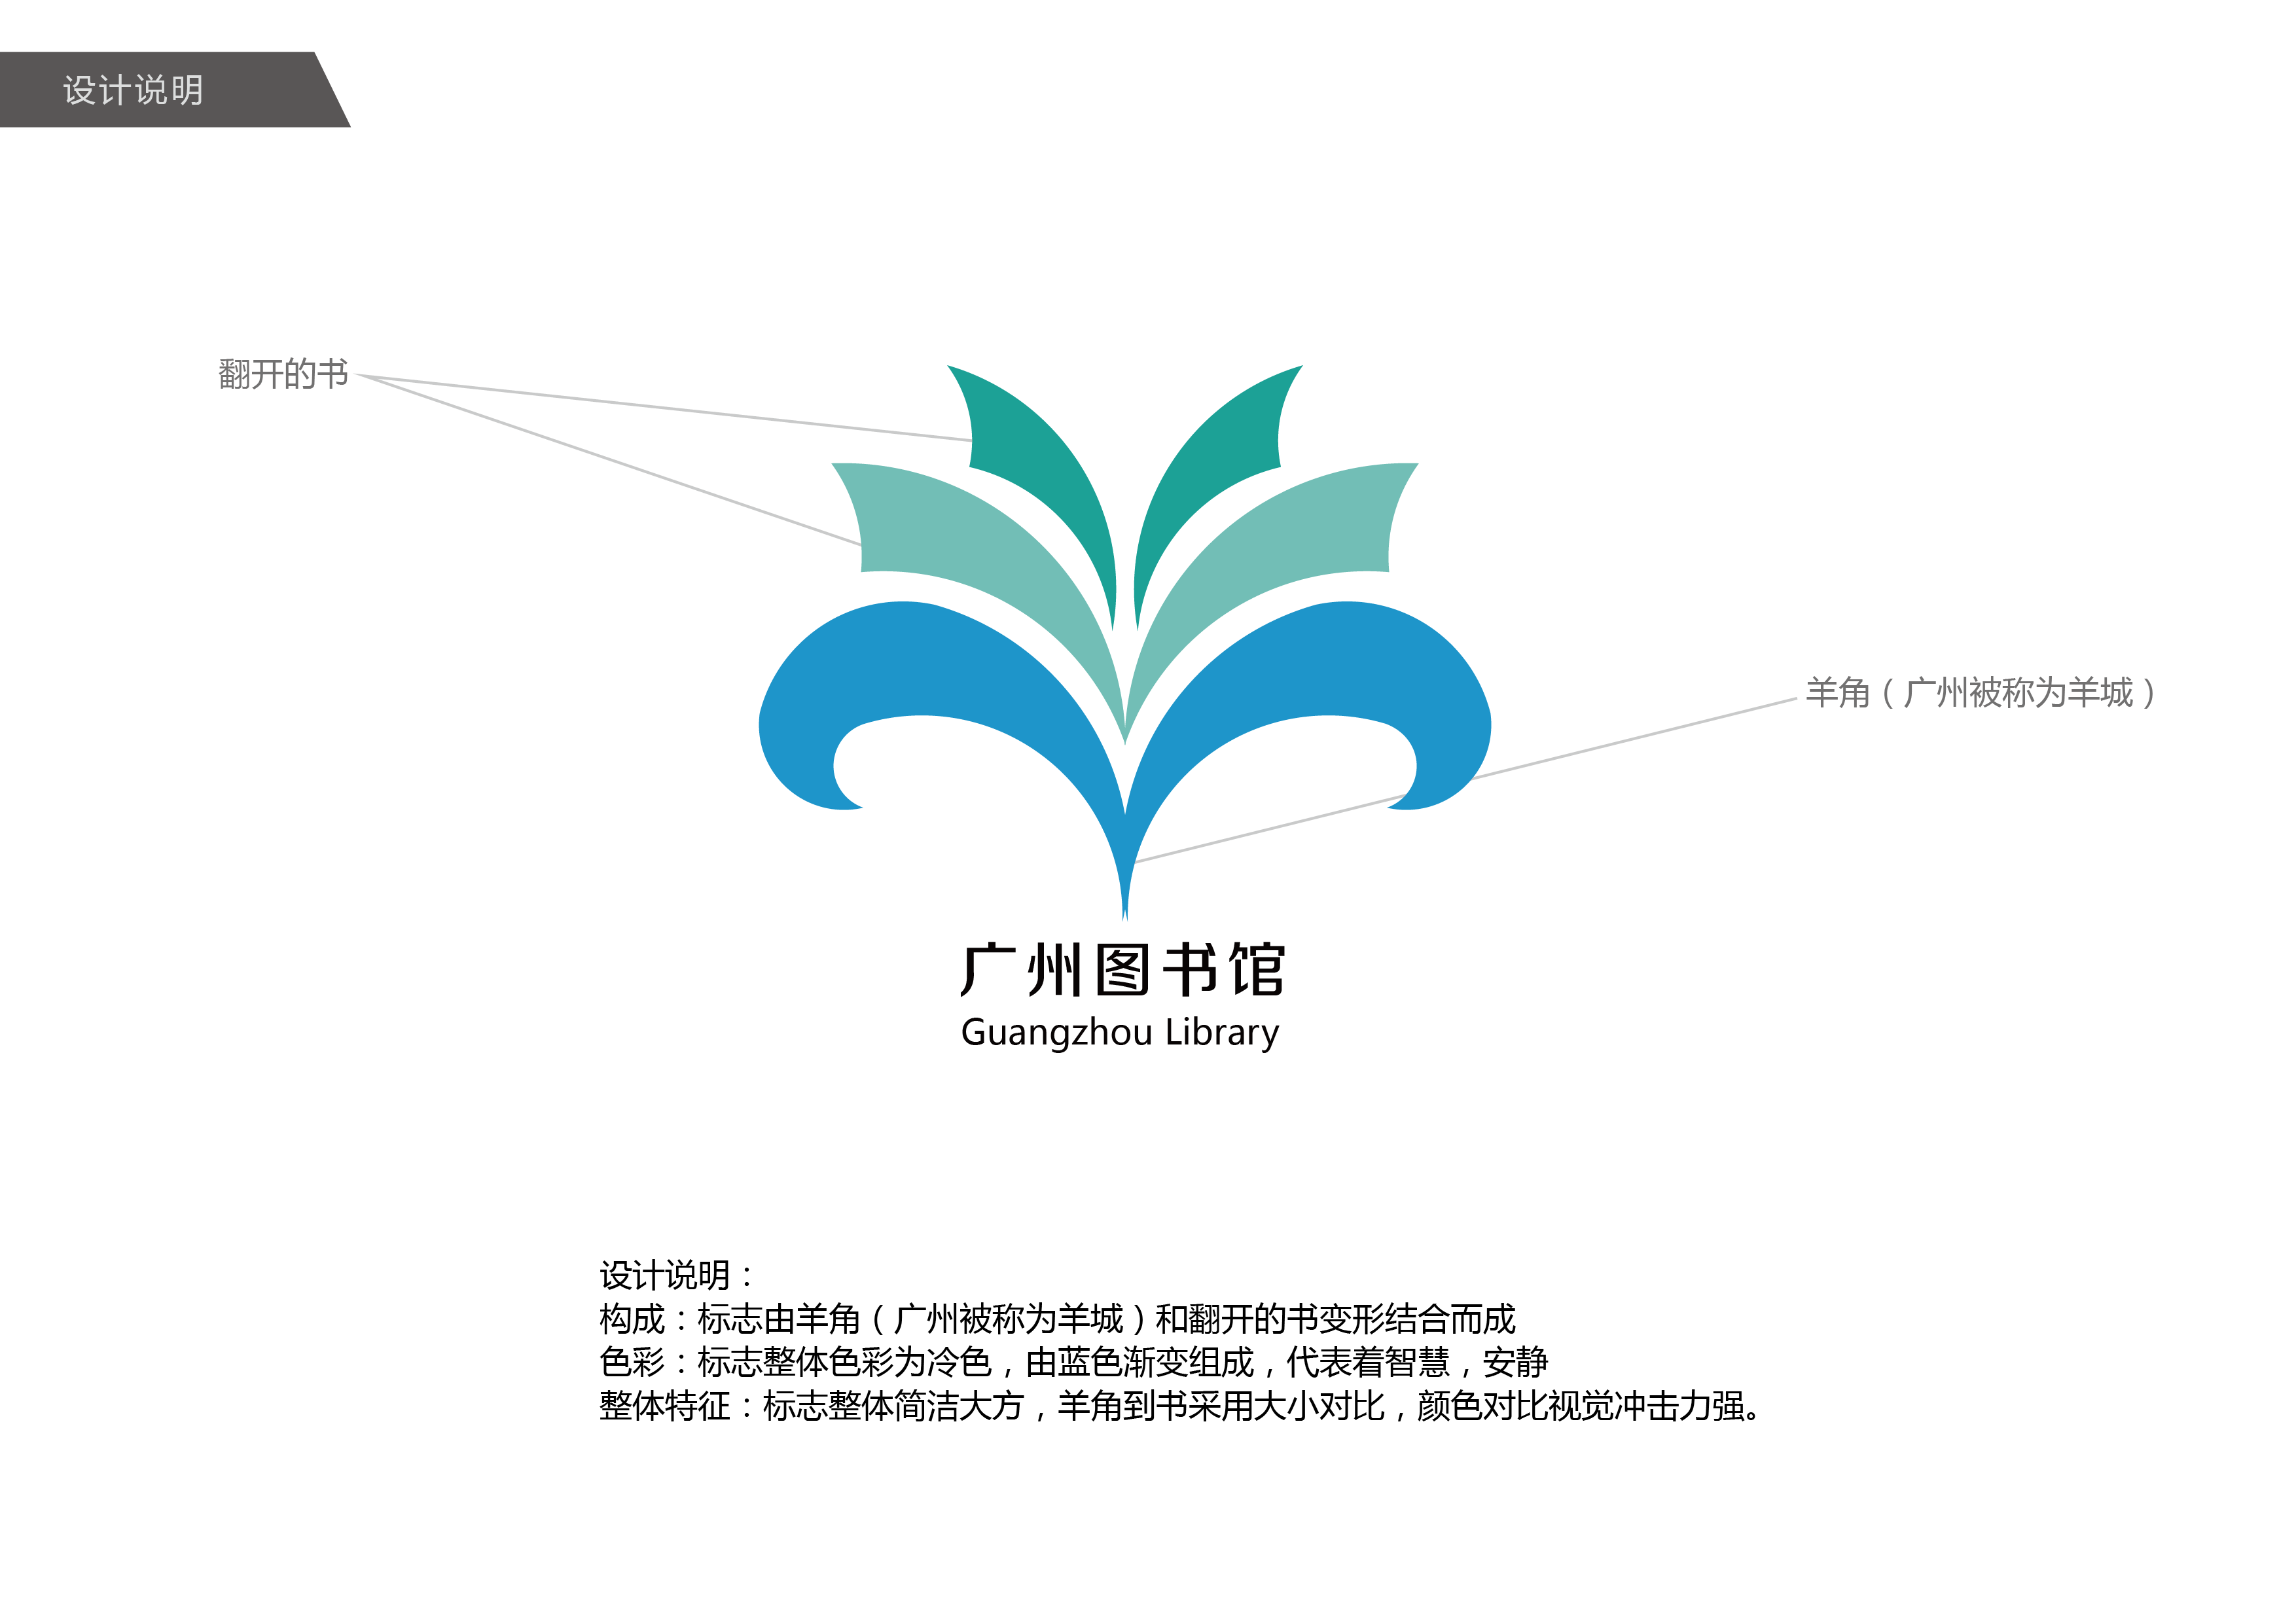 广州图书馆logo设计  设计说明: 构成:标志